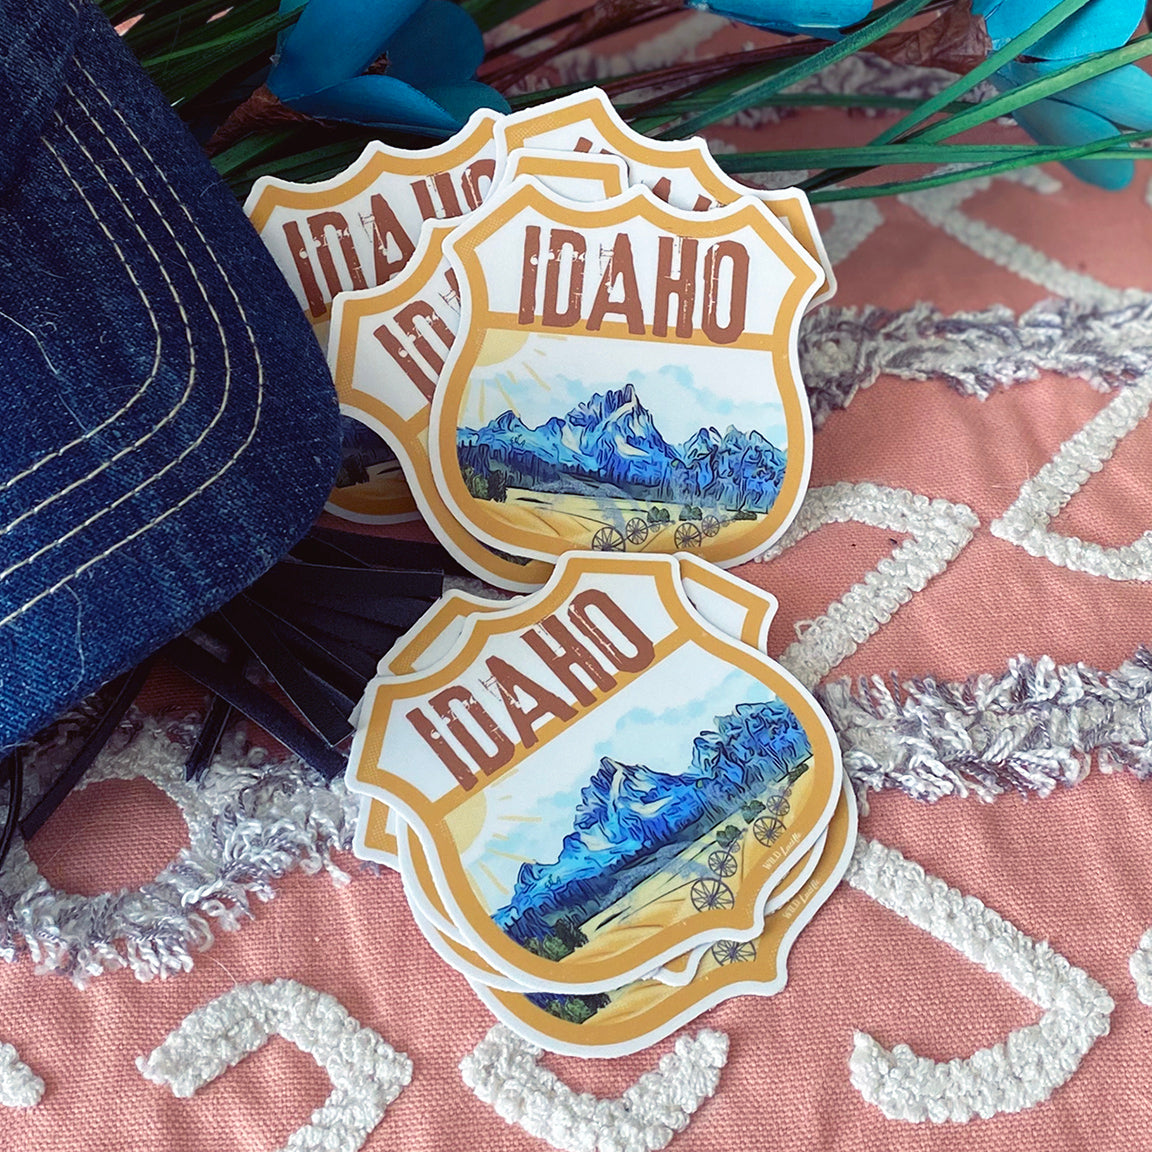 Destination Idaho - Vinyl Souvenir Sticker Decals